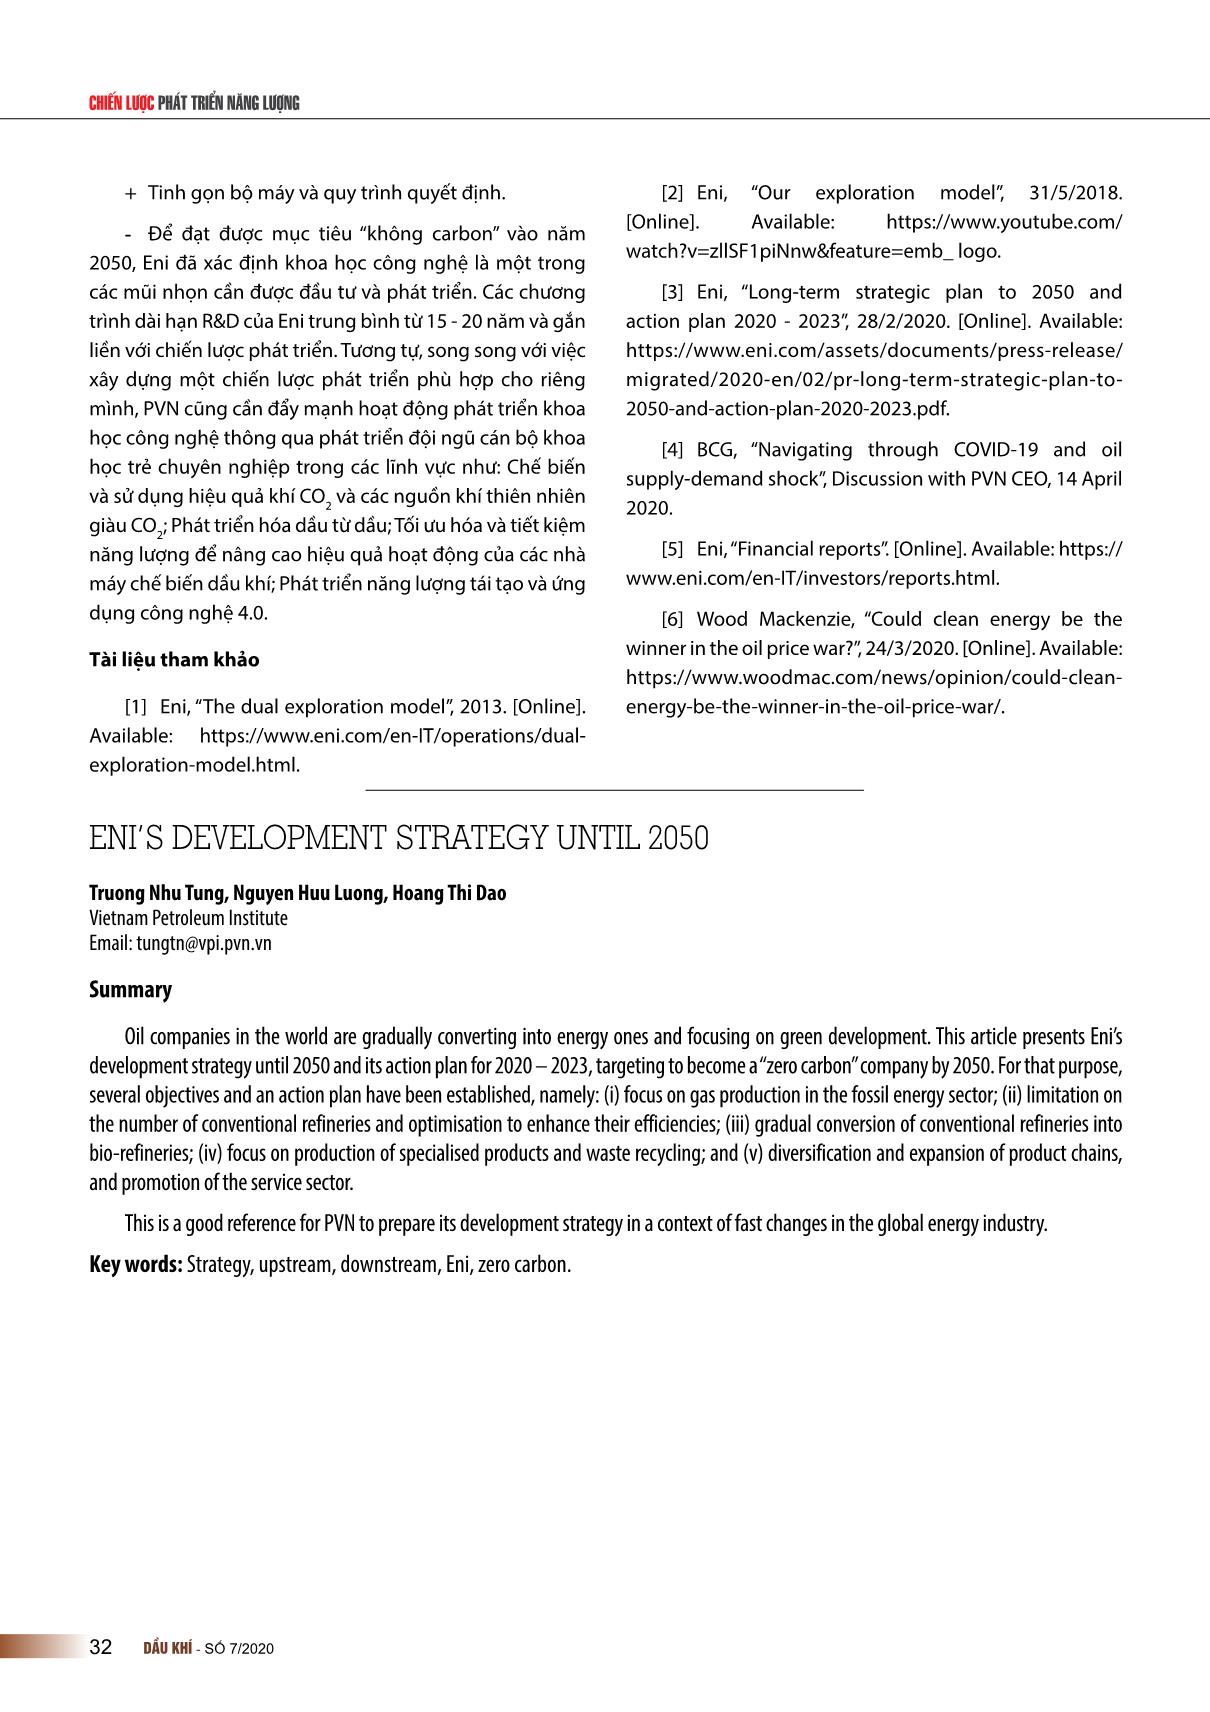 Chiến lược phát triển của ENI đến năm 2050 trang 8